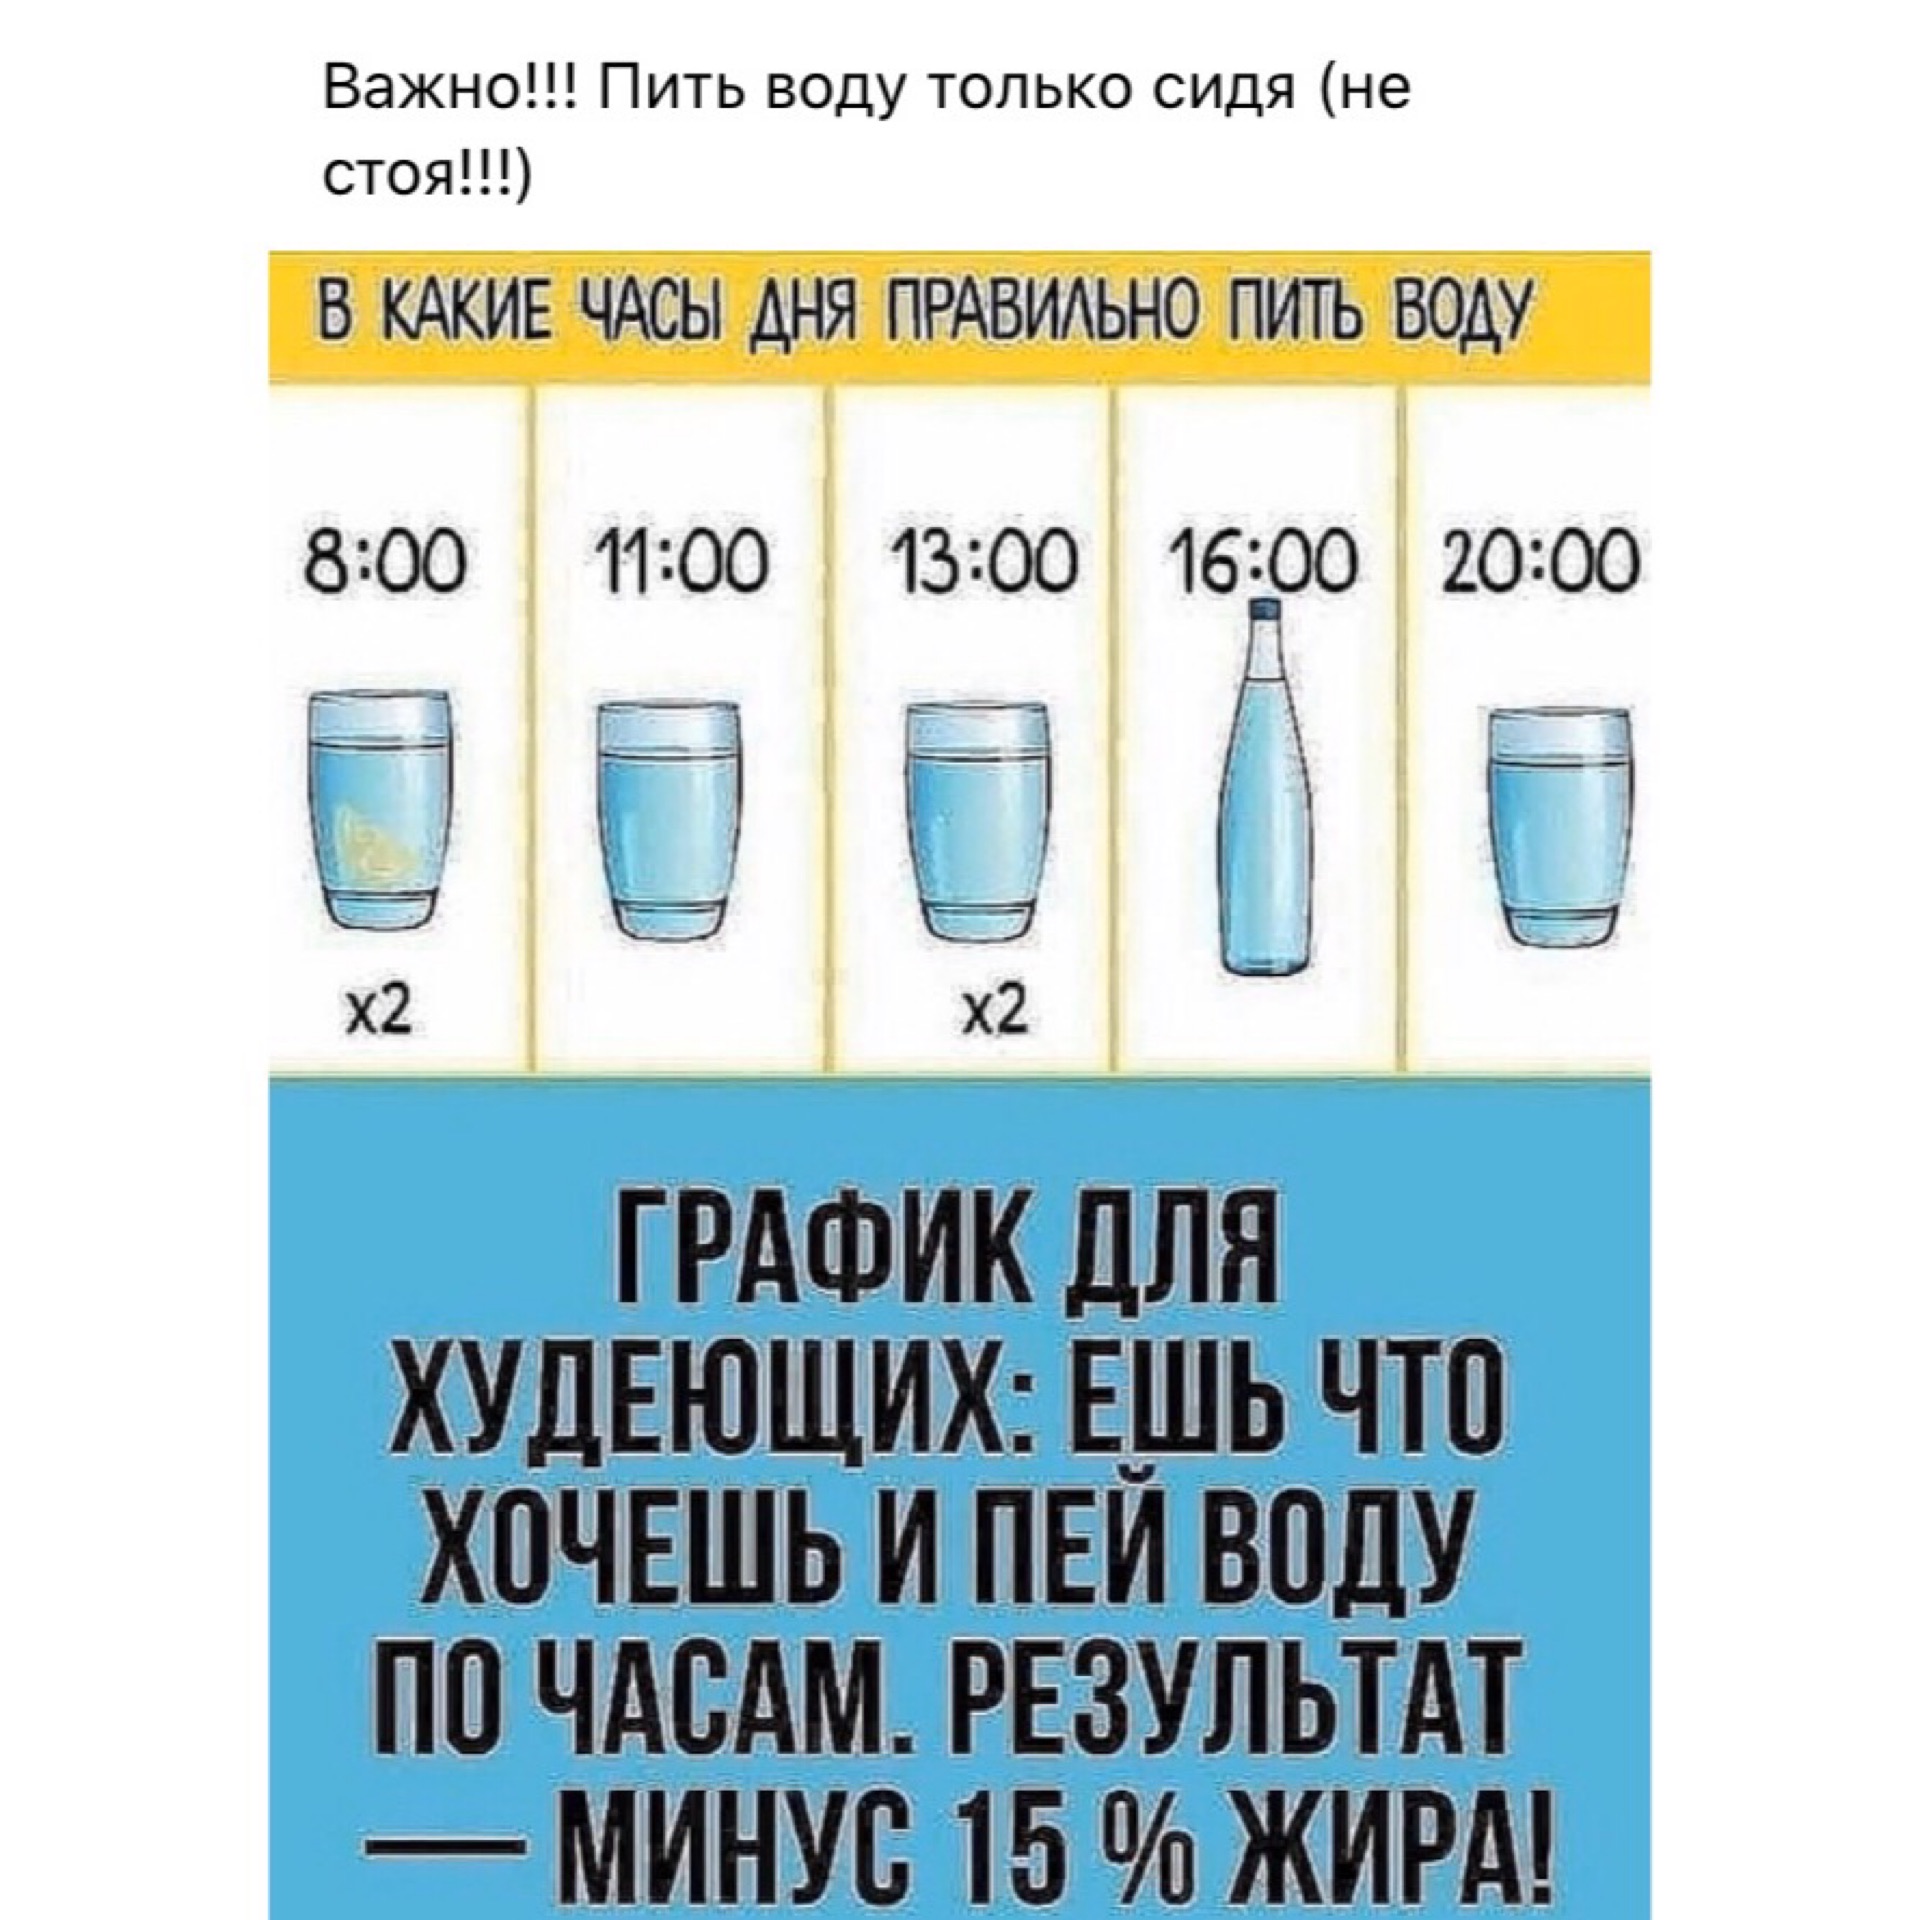 Питьевой режим для похудения по часам таблица фото для женщин после 40